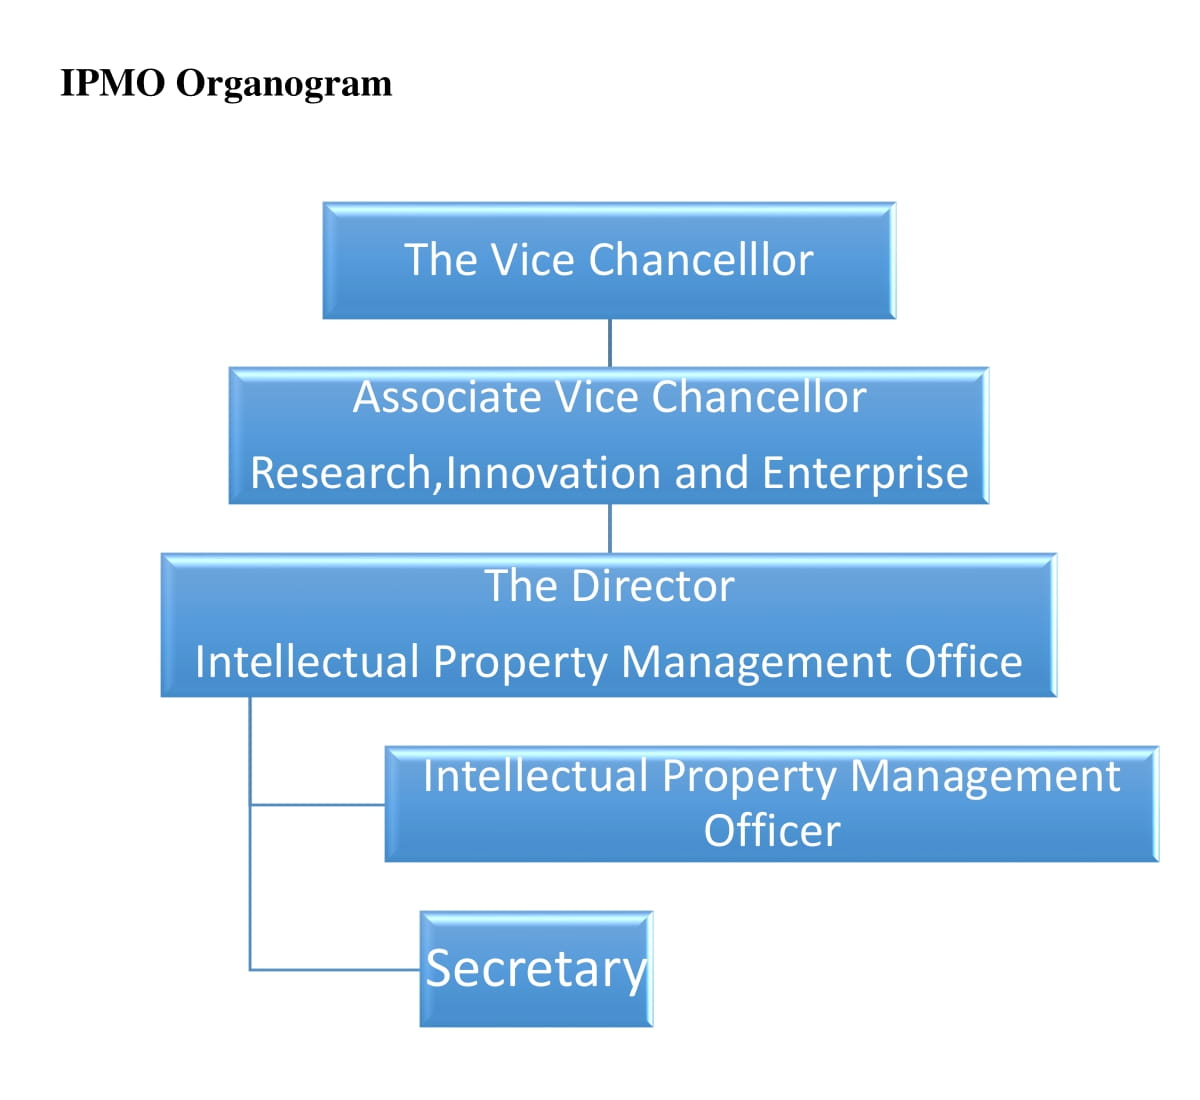 IPMO Organogram